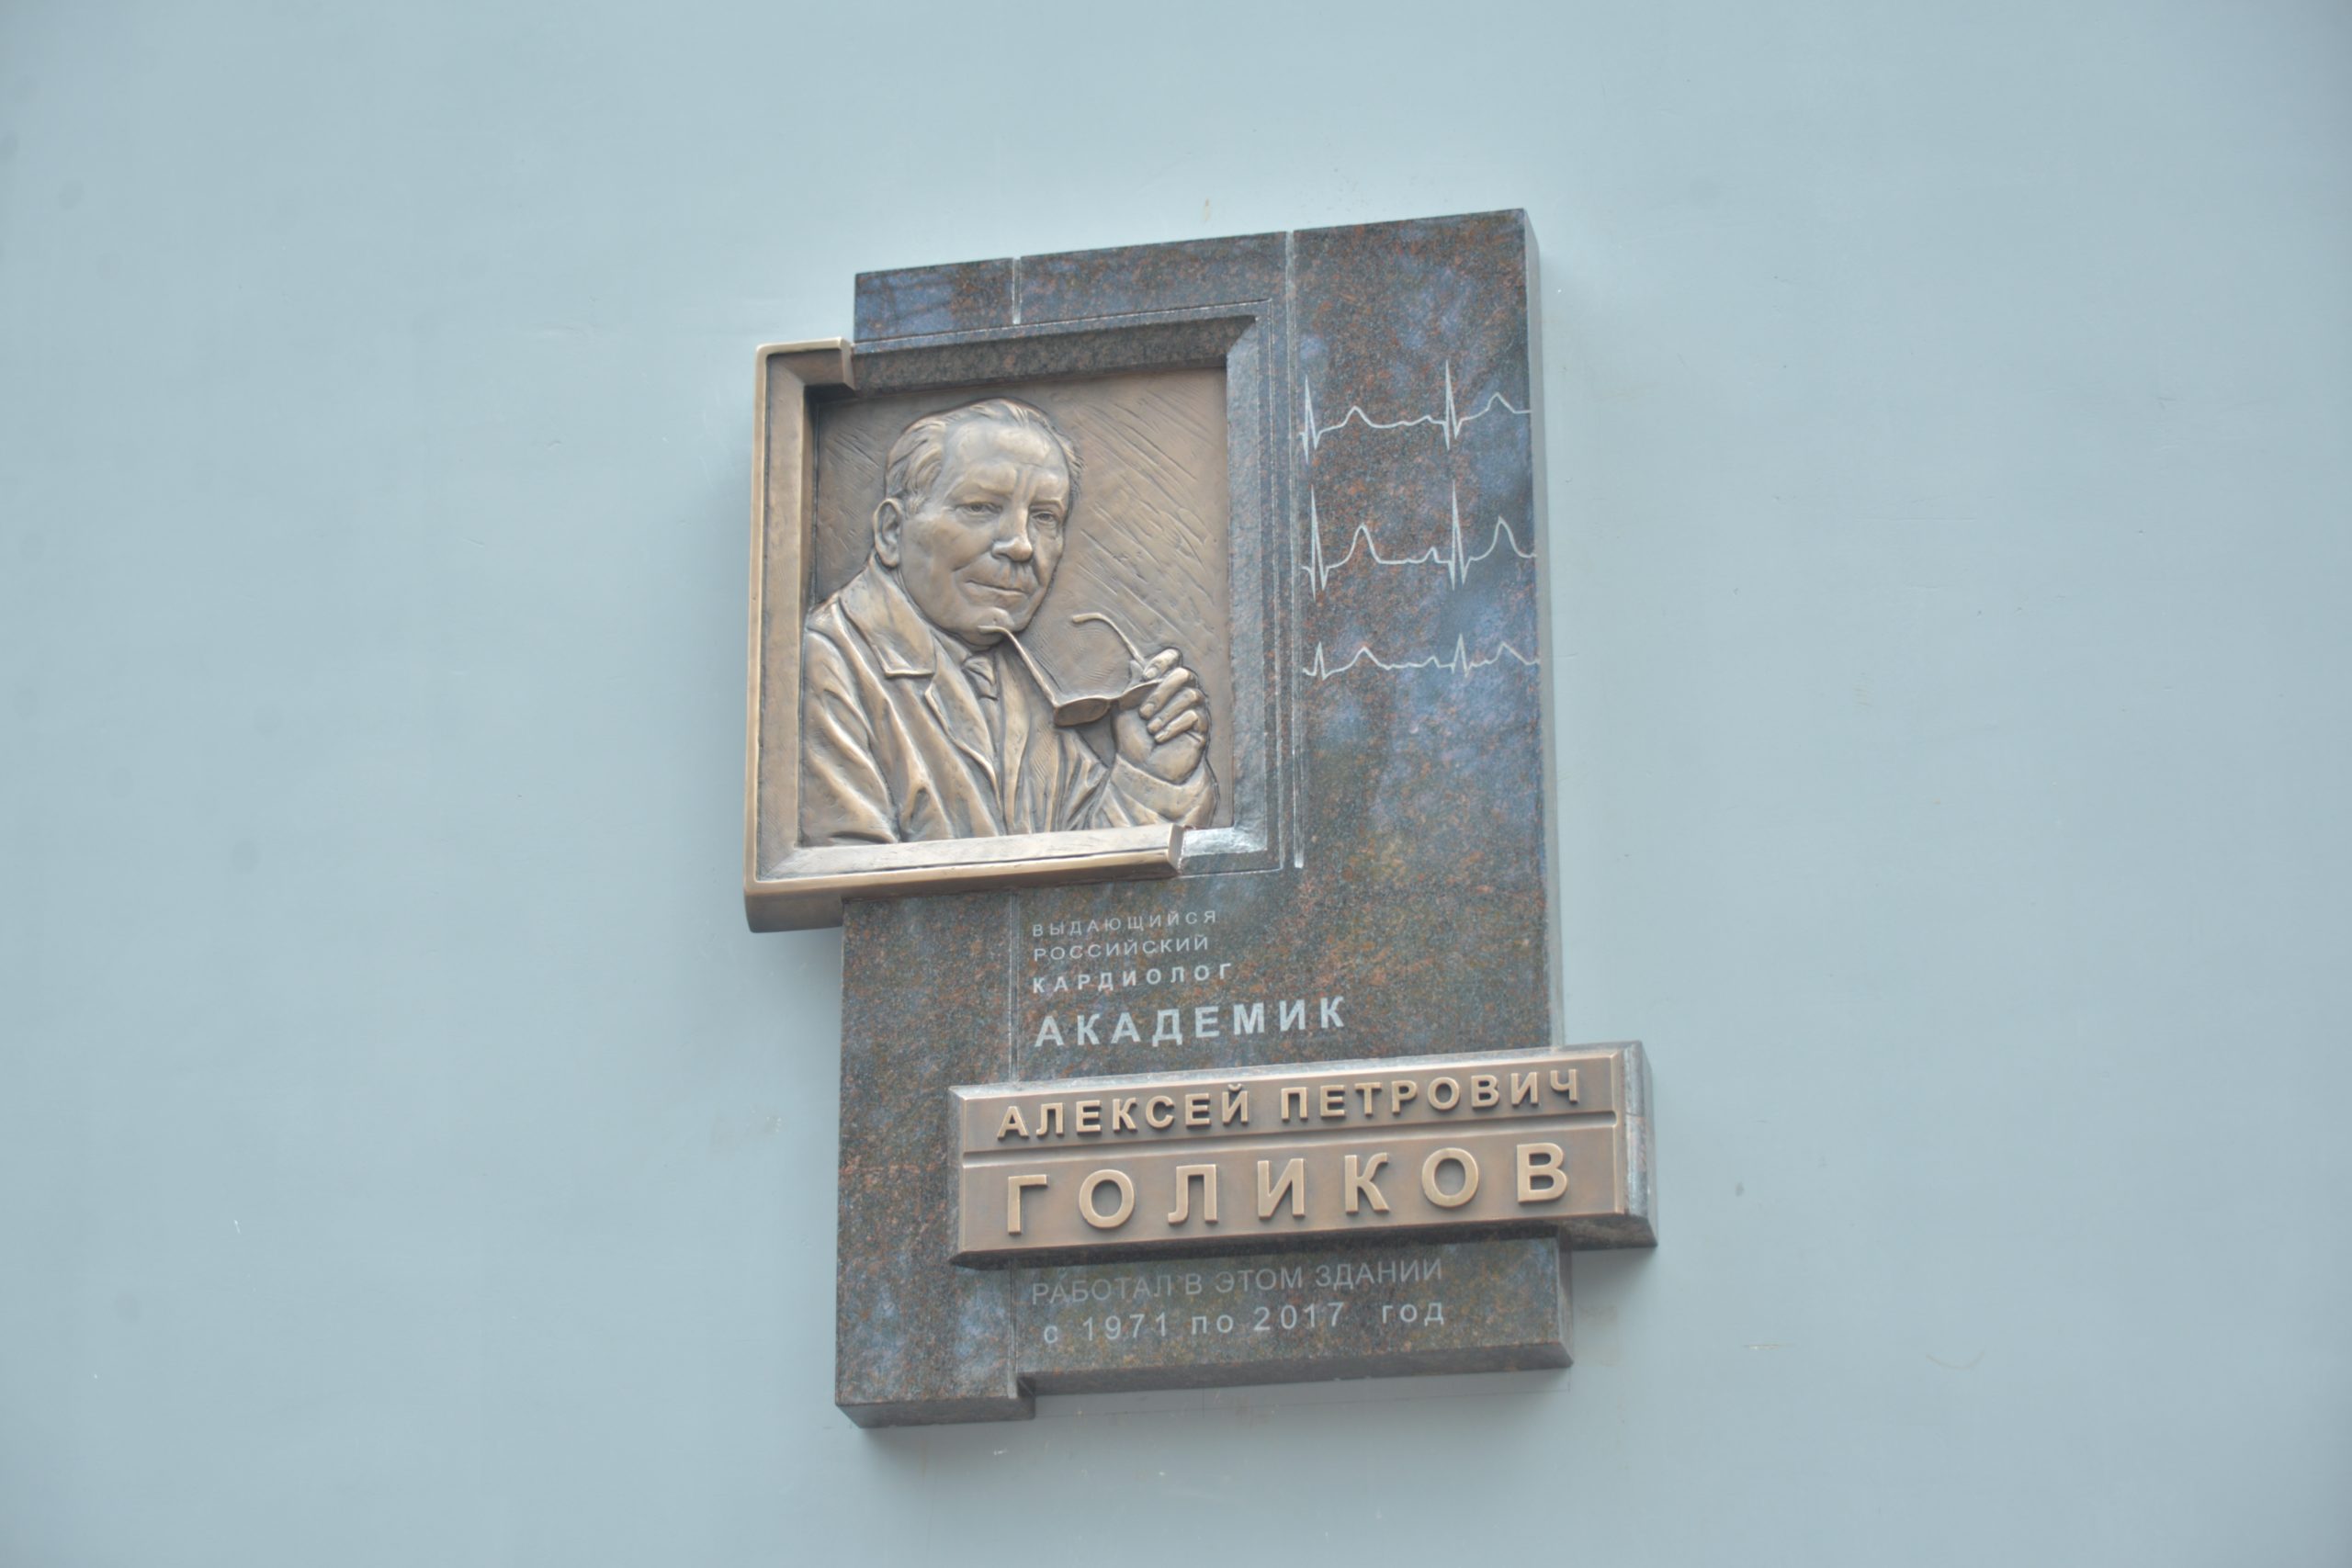 6 мая 2022 года. Памятная доска Алексею Голикову на 6-м корпусе Института Склифосовского. Фото: